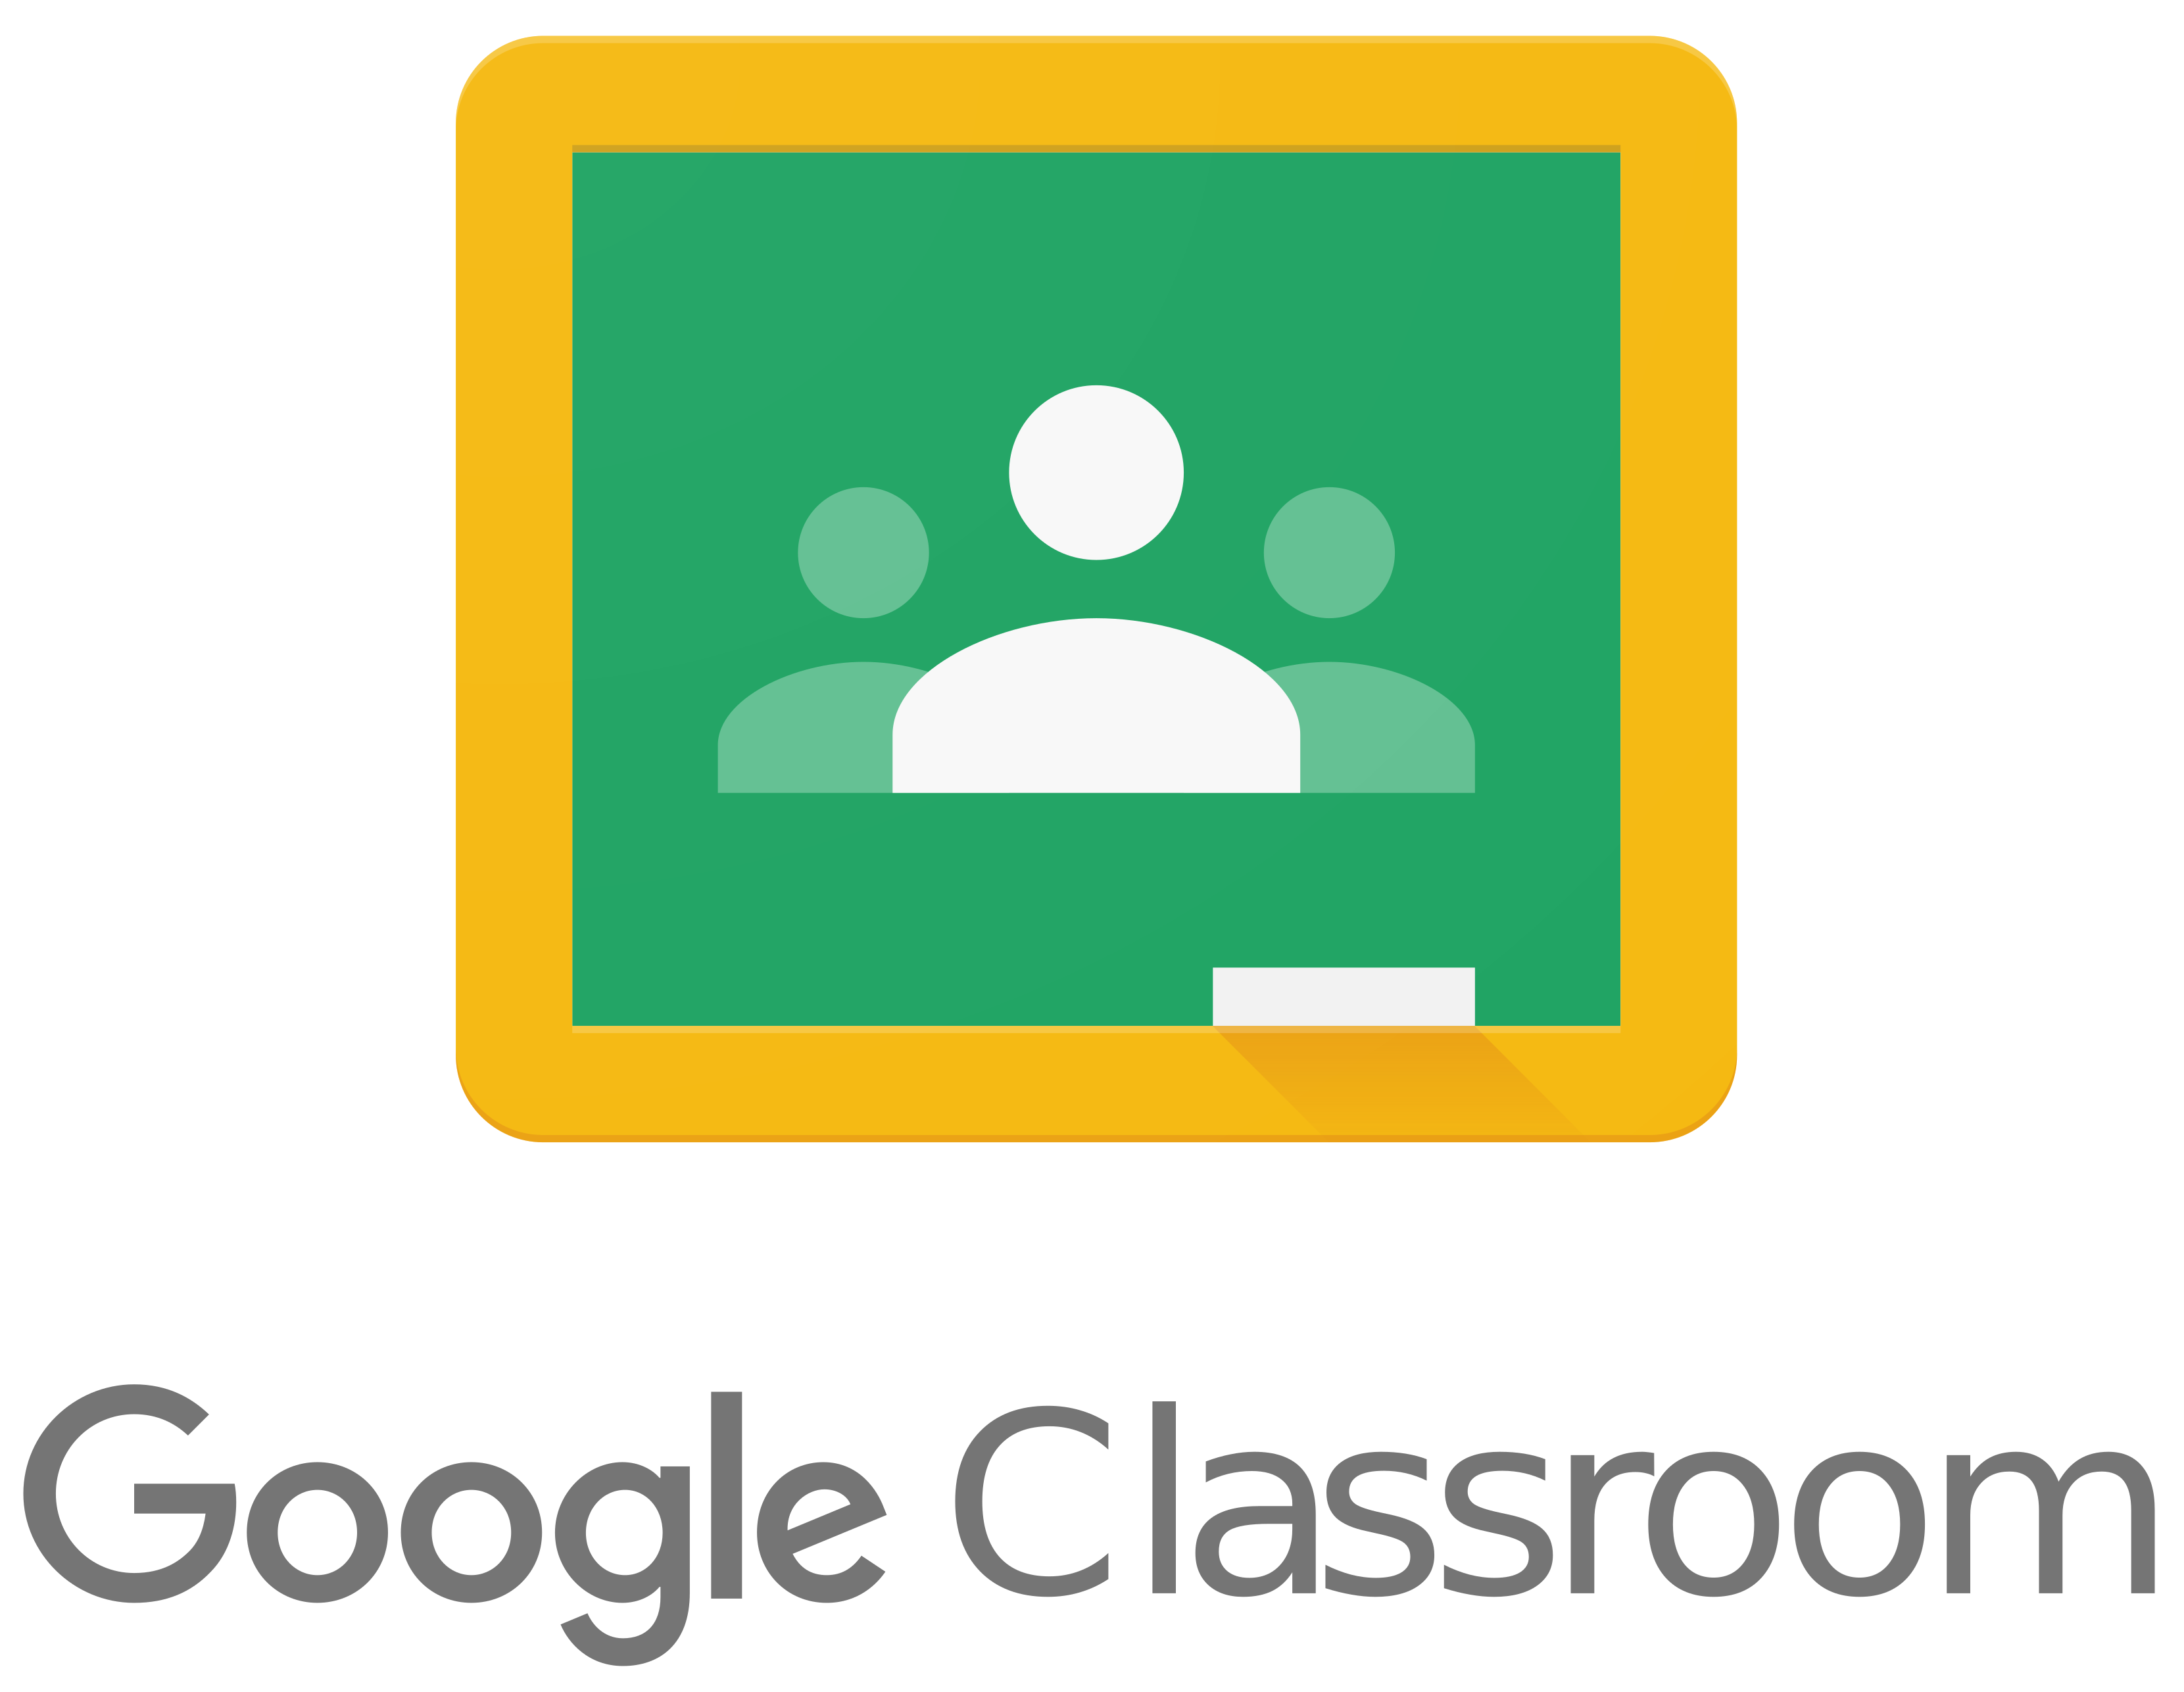 I can't access google classroom. - Google Classroom Community